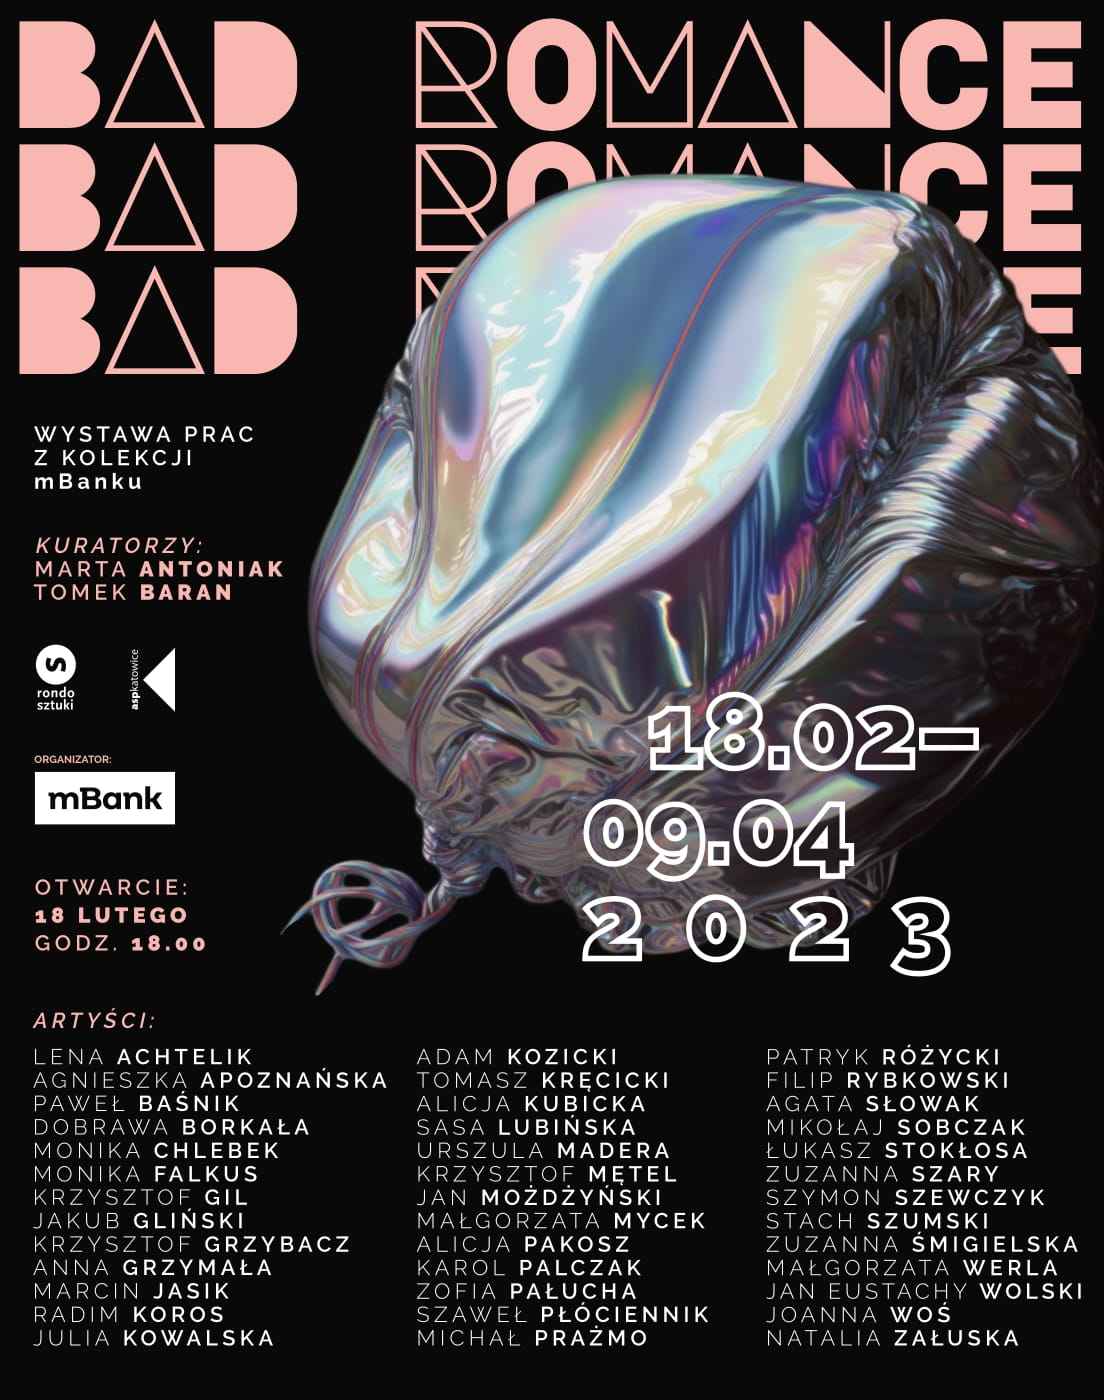 Od 18 lutego zapraszamy do oglądania wystawy Bad Romance  w Galerii Rondo Sztuki w Katowicach